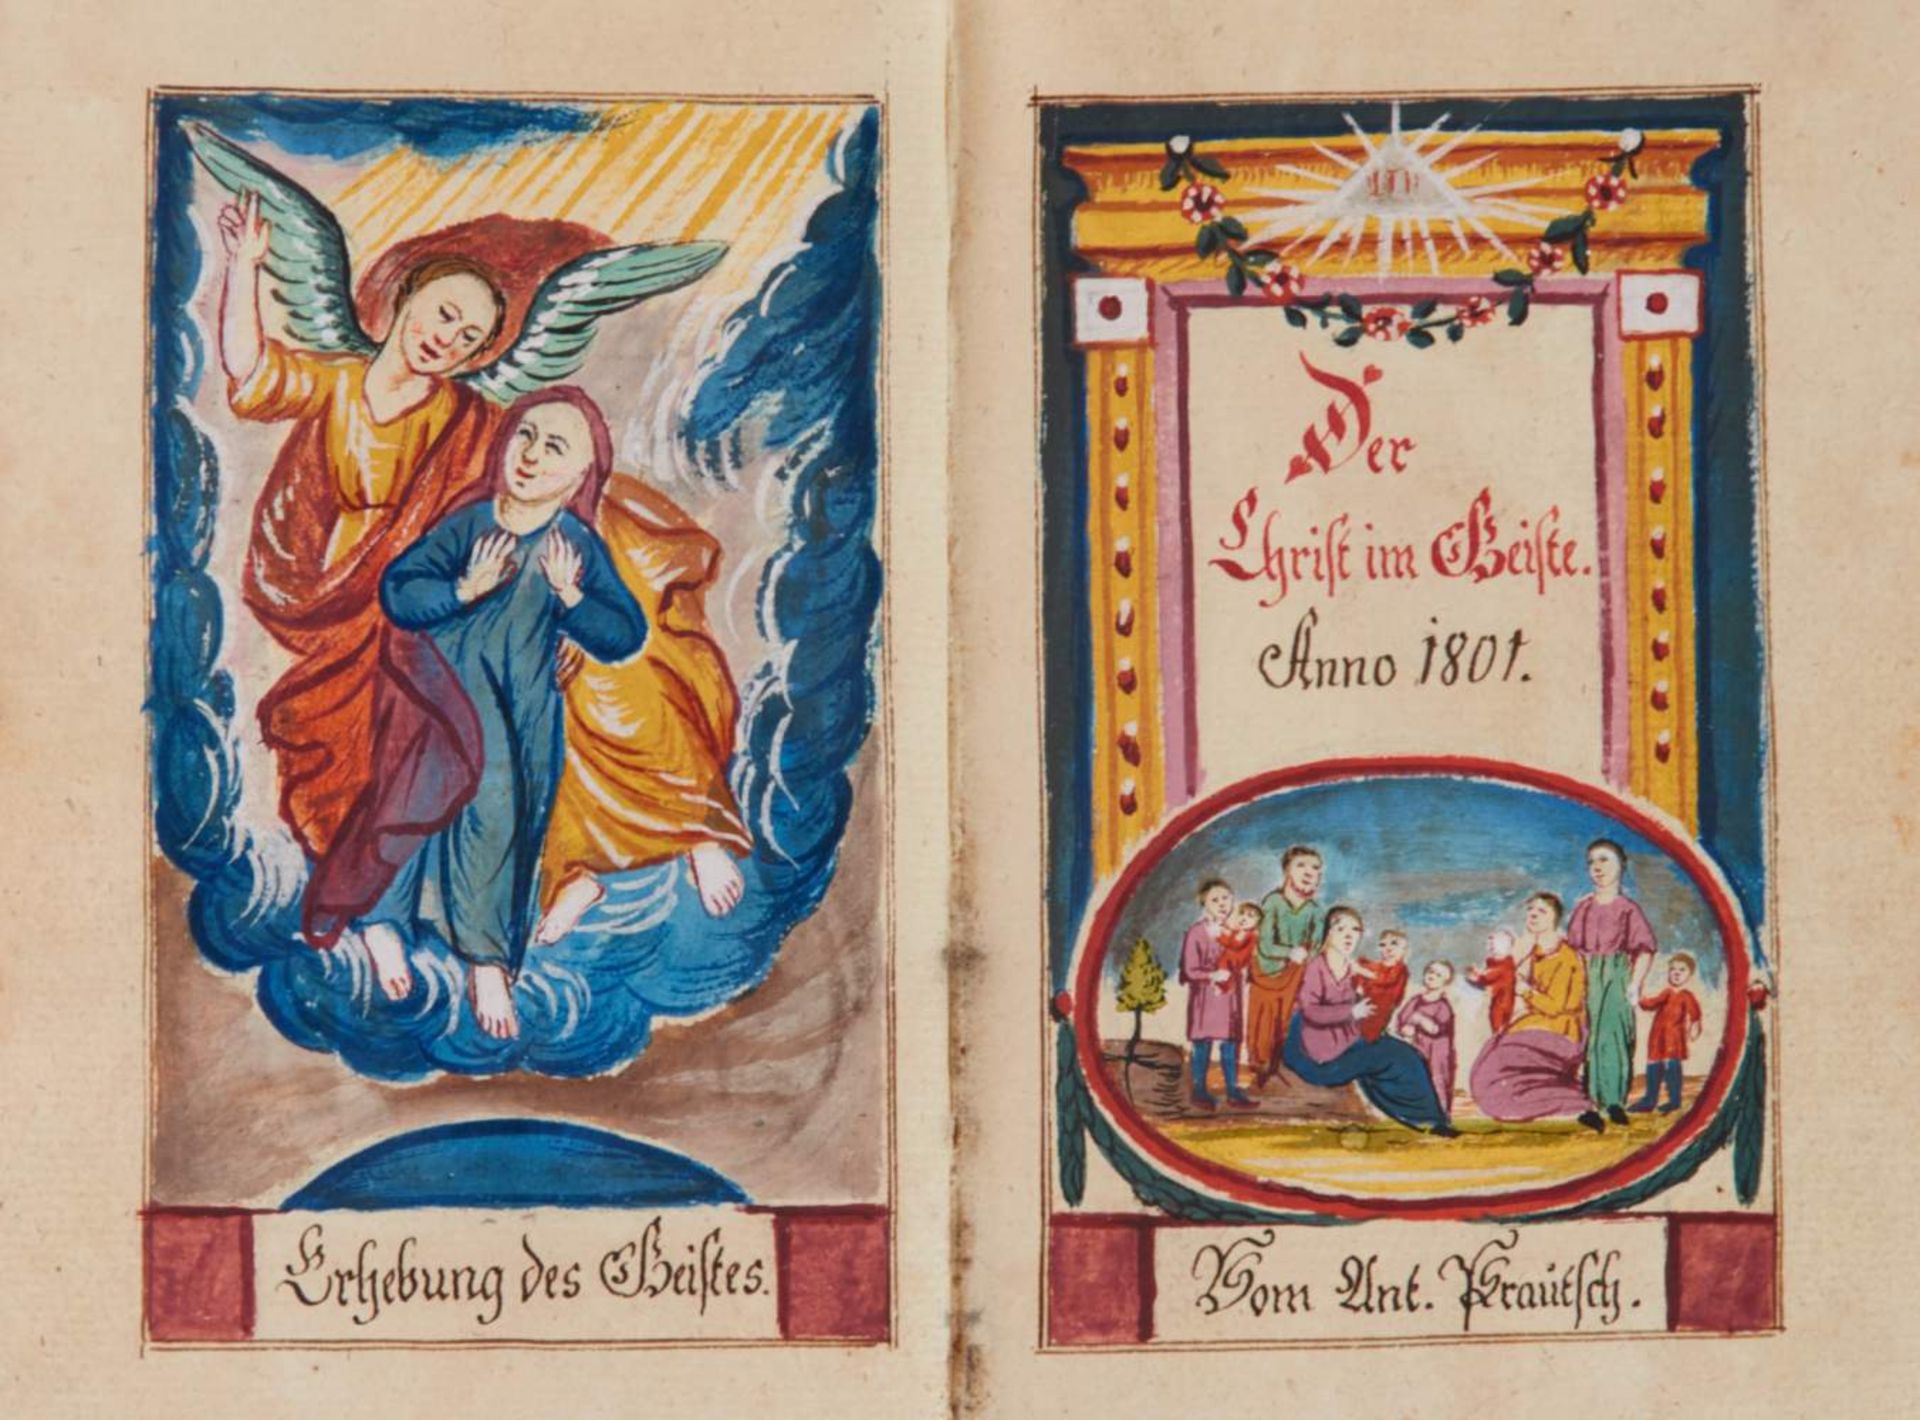 "Der Christ im Geiste. Anno 1801." Deutsche Handschrift auf Papier. Nordböhmen, dat. 1801. 17,3 x 11 - Bild 2 aus 3